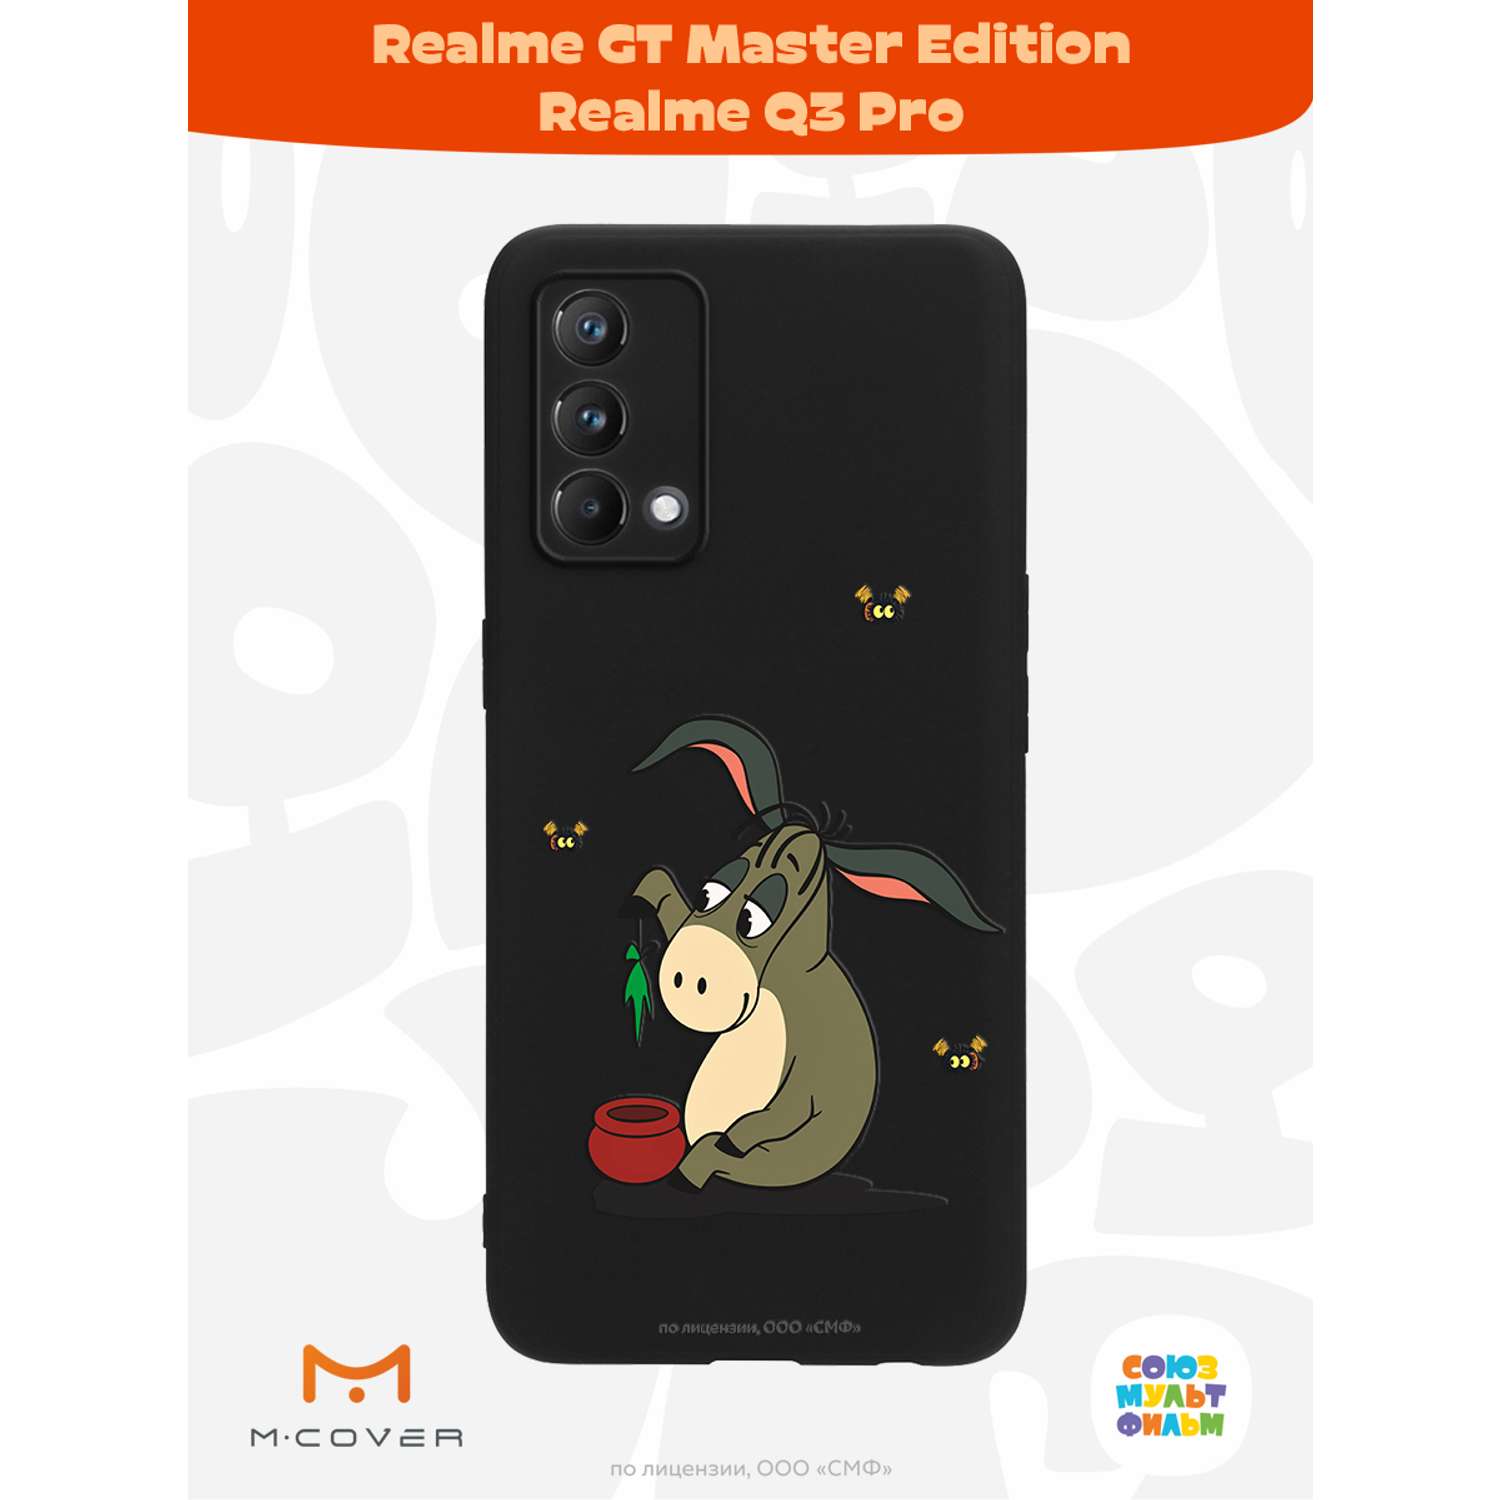 Силиконовый чехол Mcover для смартфона Realme GT Master Edition Q3 Pro Союзмультфильм Грустный Ослик Иа - фото 2